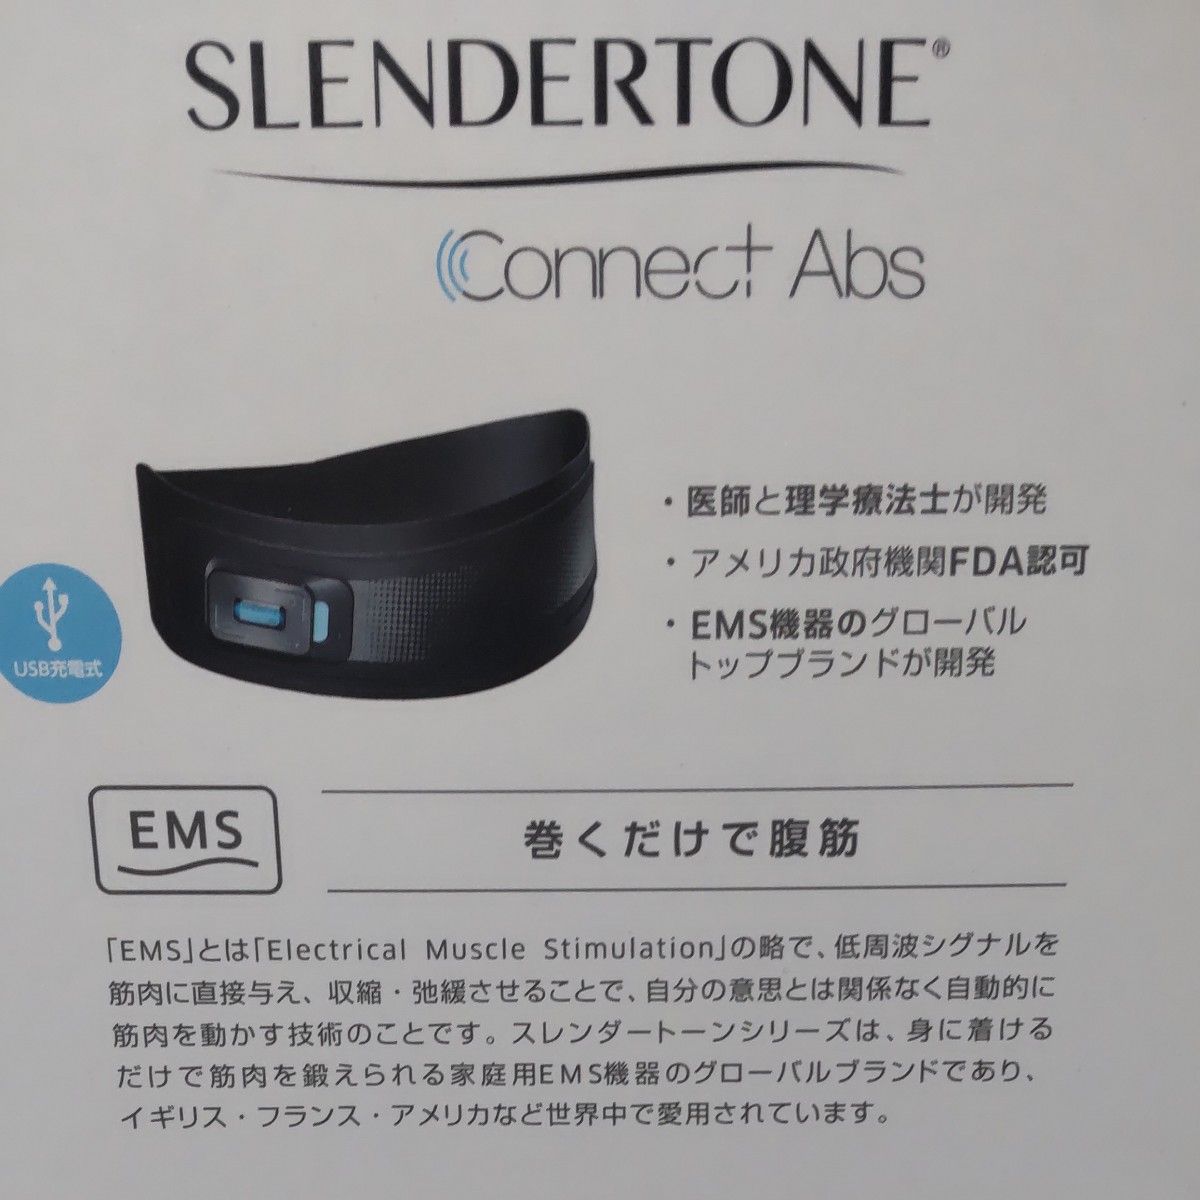 ショップジャパン SLTC01KD スレンダートーン コネクト ブラック